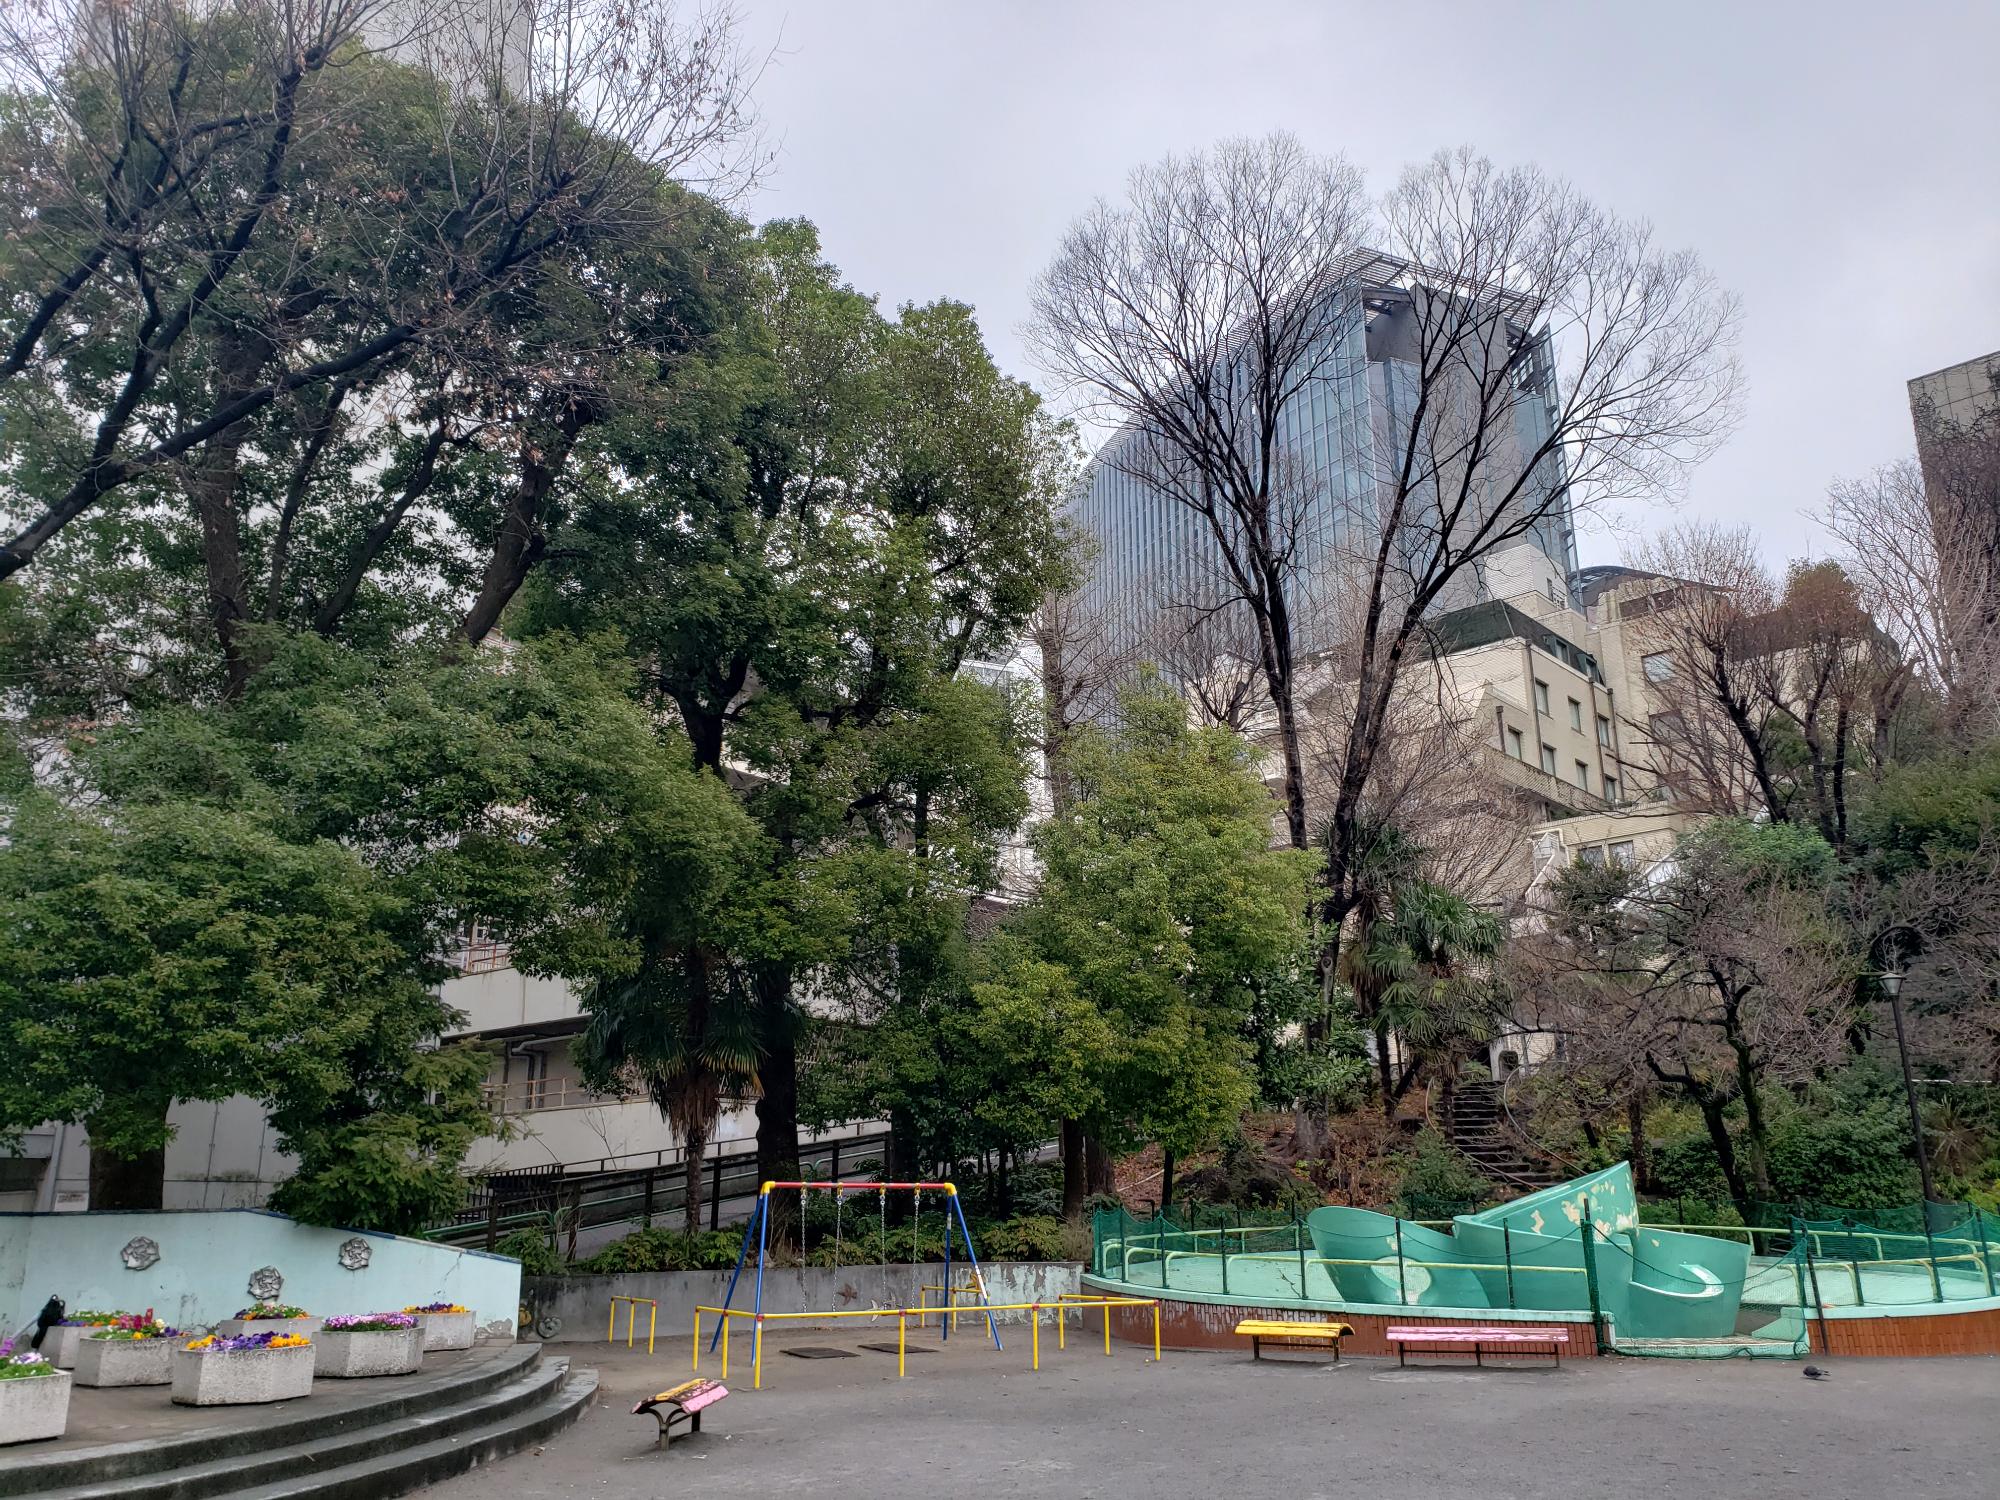 周辺に木々が立ち並び、緑色の滑り台やブランコ、ベンチなどが設置された錦華公園の写真